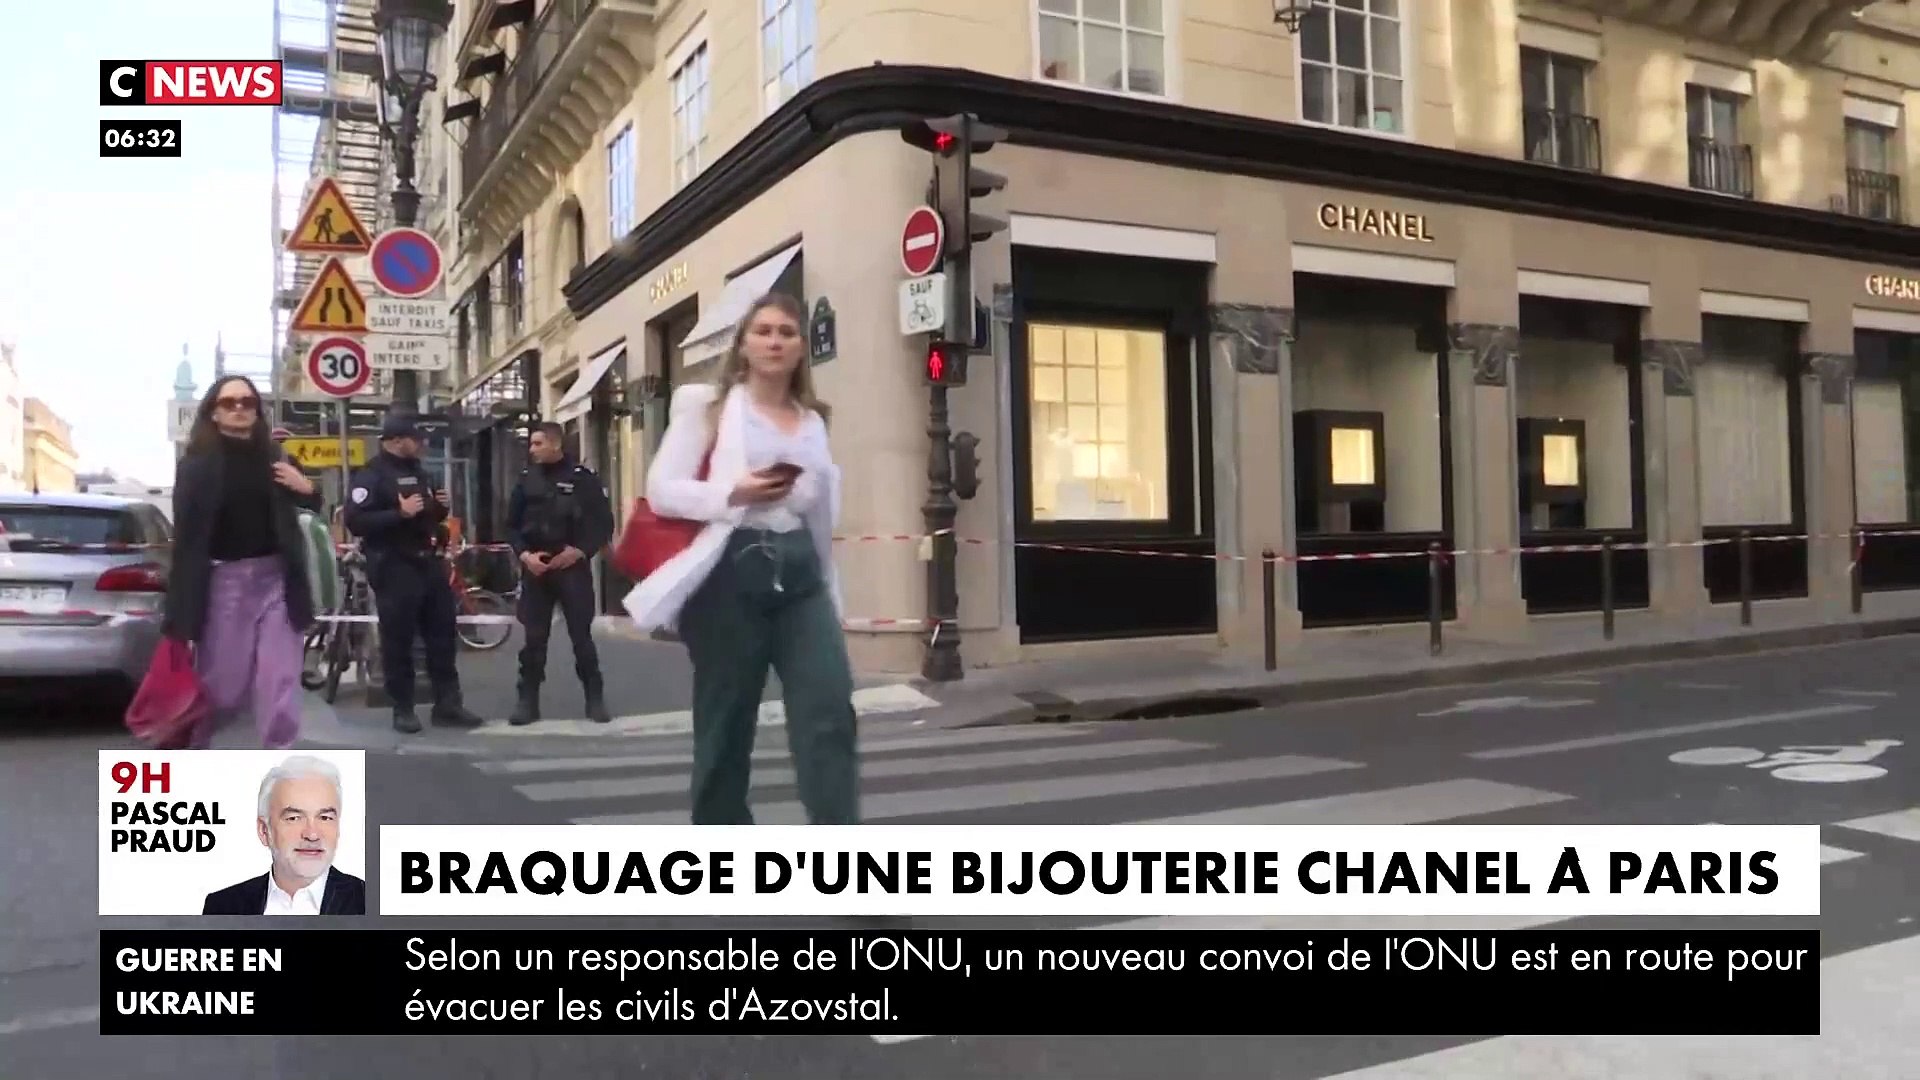 Braquage de la boutique Chanel rue de la Paix : Que sait-on ce matin sur ce  coup d'éclat dont les images tournent sur toutes les chaînes depuis hier  soir ? - Vidéo